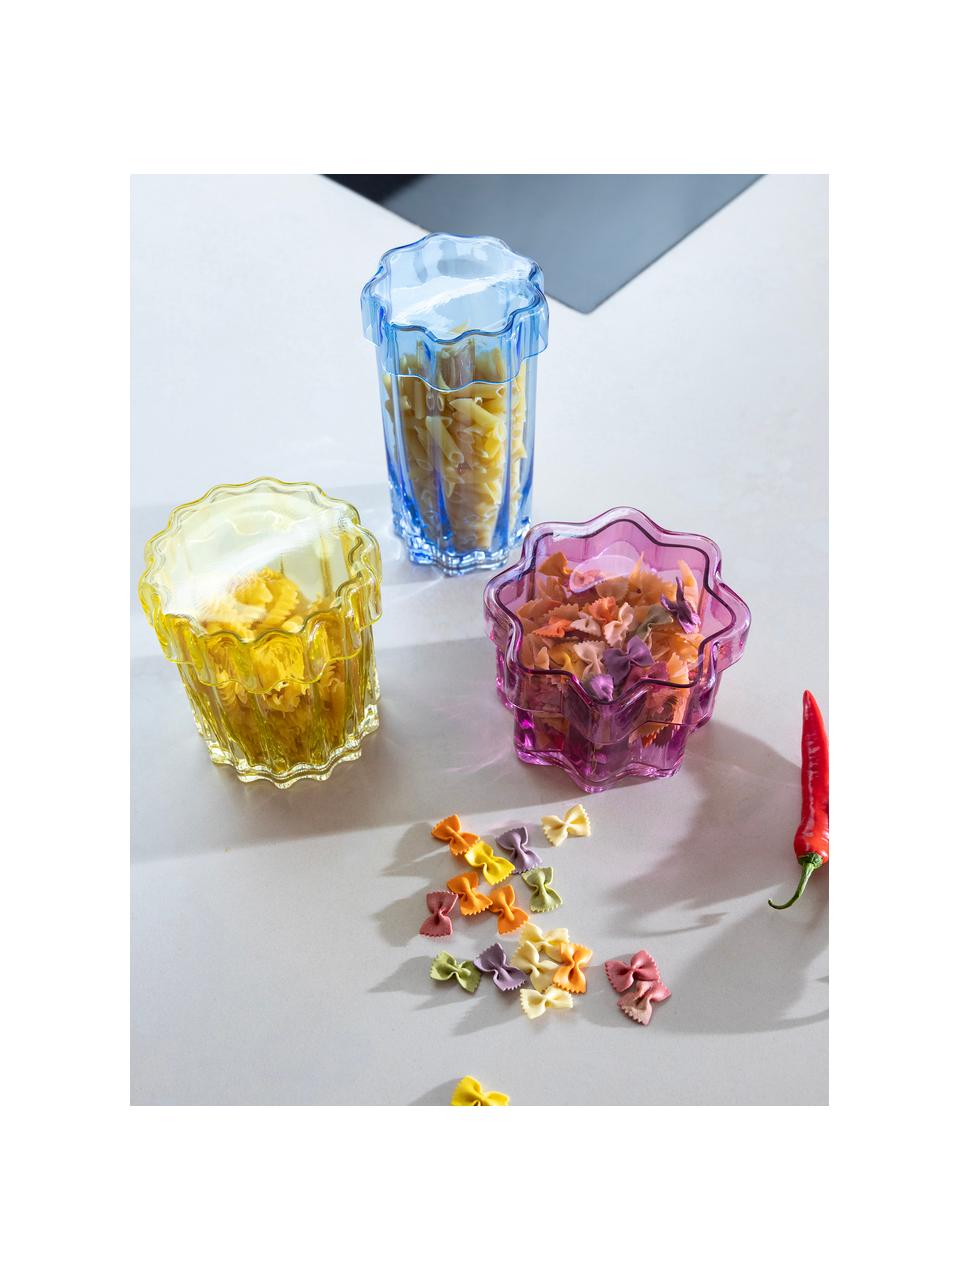 Handgefertigte Glas-Aufbewahrungsdose Astral, Glas, Gelb, Ø 13 x H 15 cm